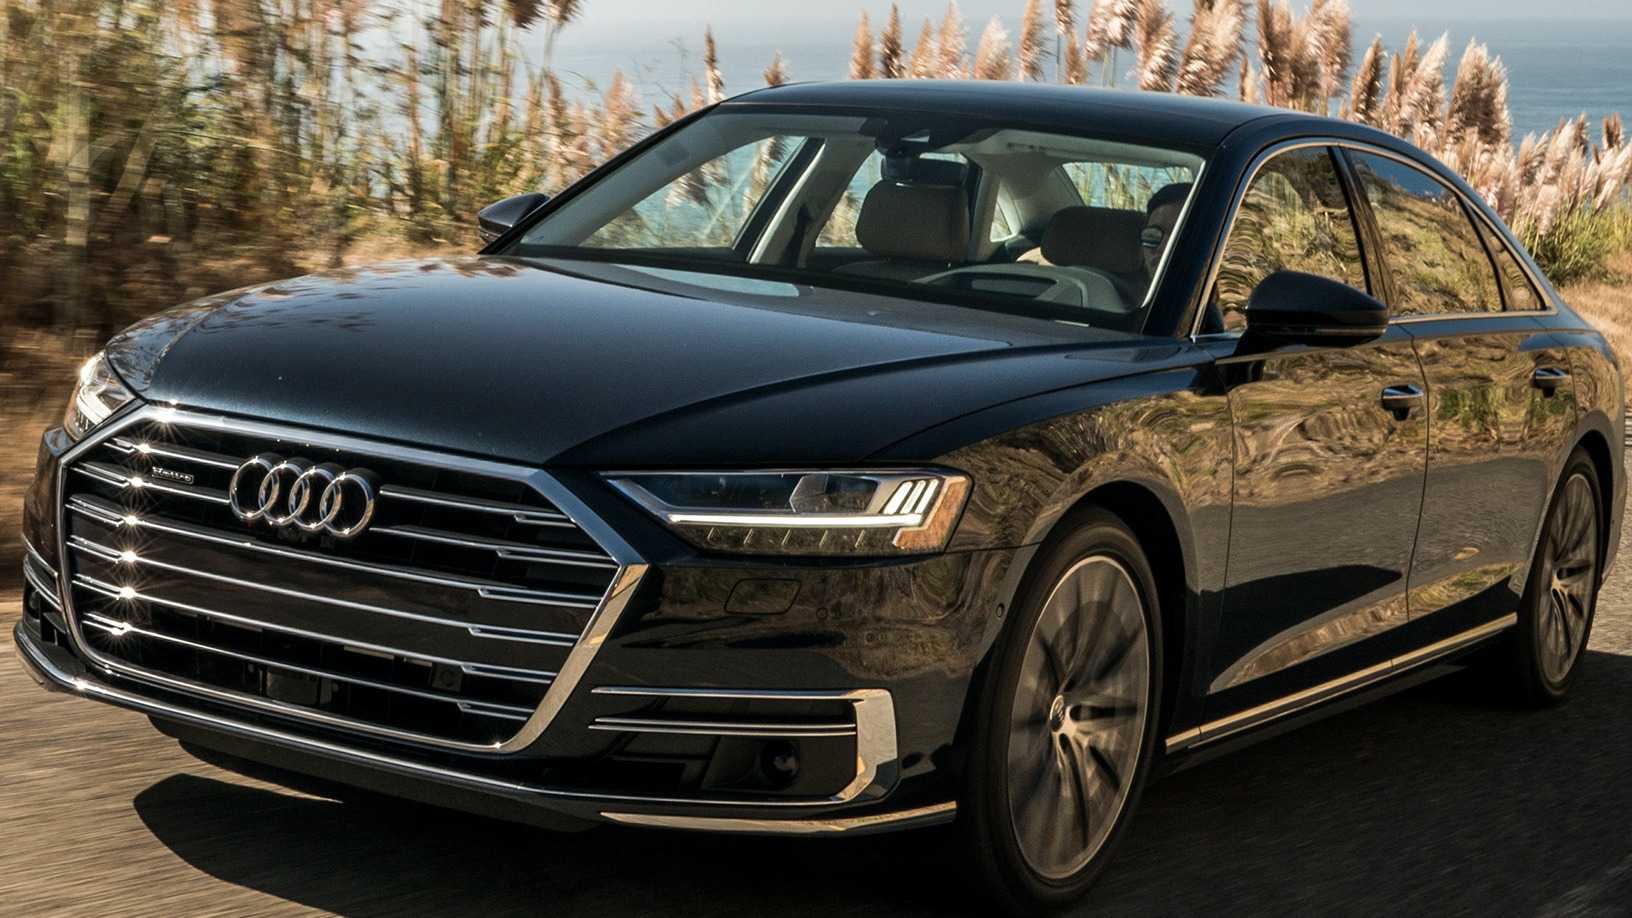 Audi q7 2019 новый кузов, цены, комплектации, фото, видео тест-драйв